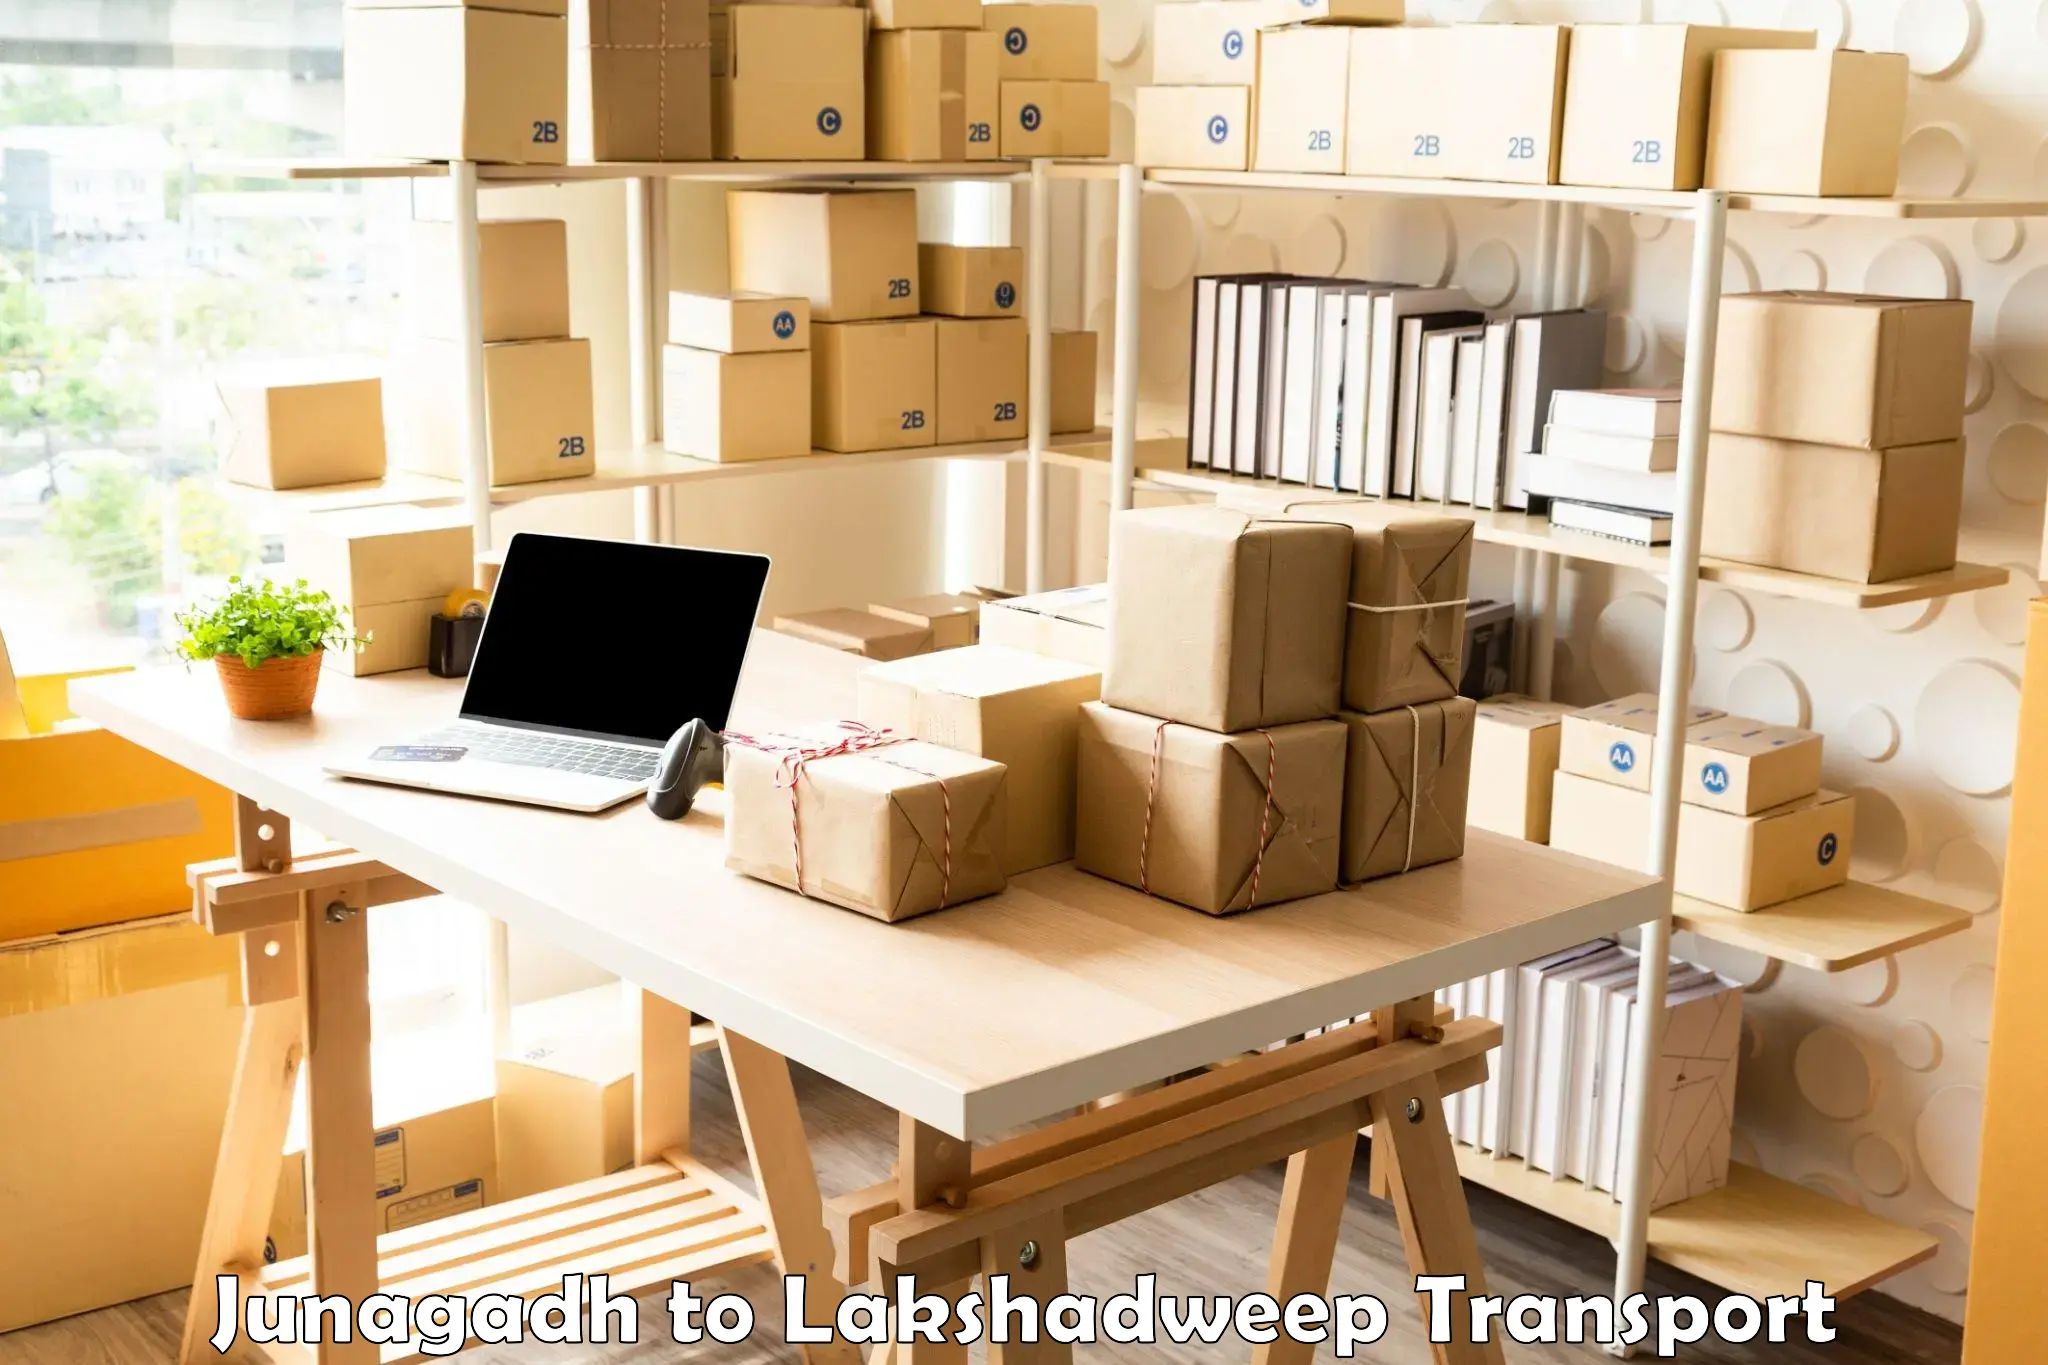 Online transport booking Junagadh to Lakshadweep